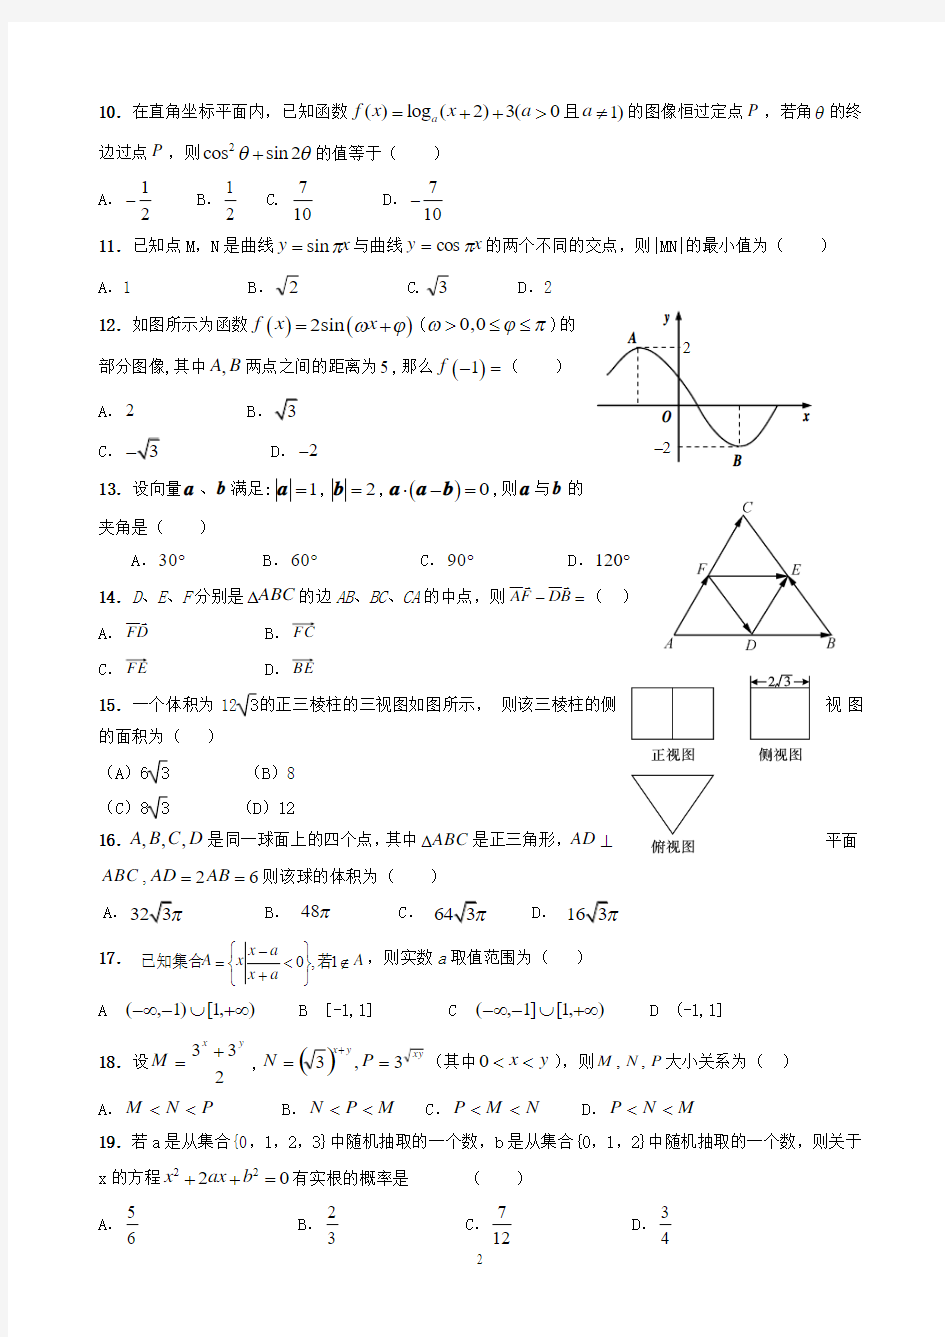 2013年高考冲刺类型归纳50题(文科数学)